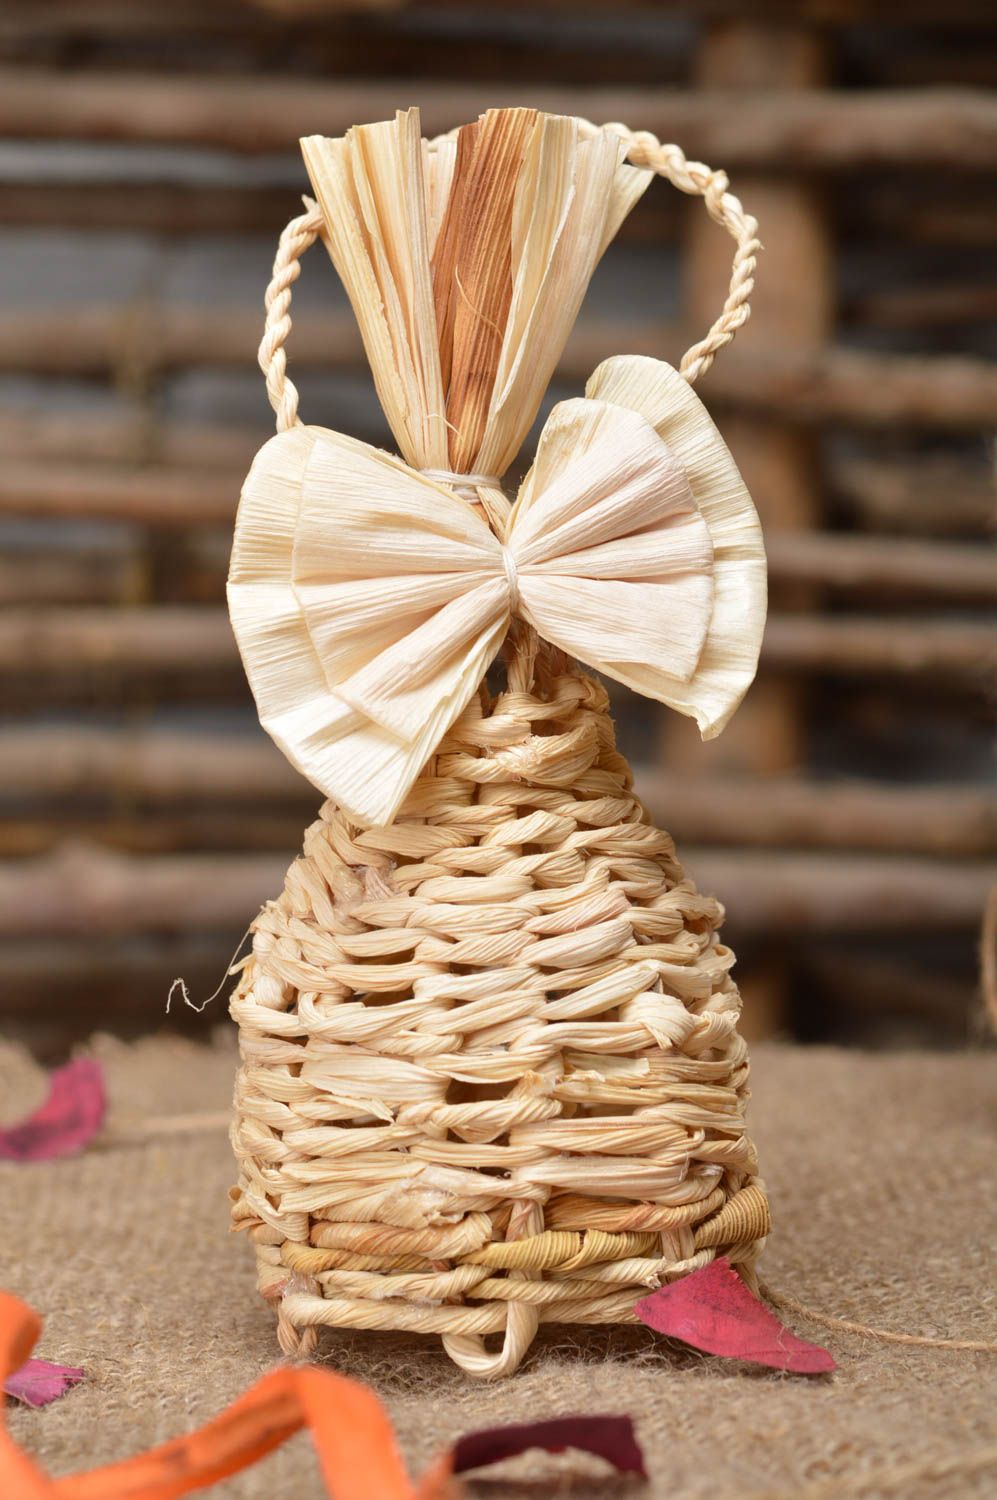 Колокольчик с бантиком из кукурузных листьев плетеный вручную для декора дома фото 1